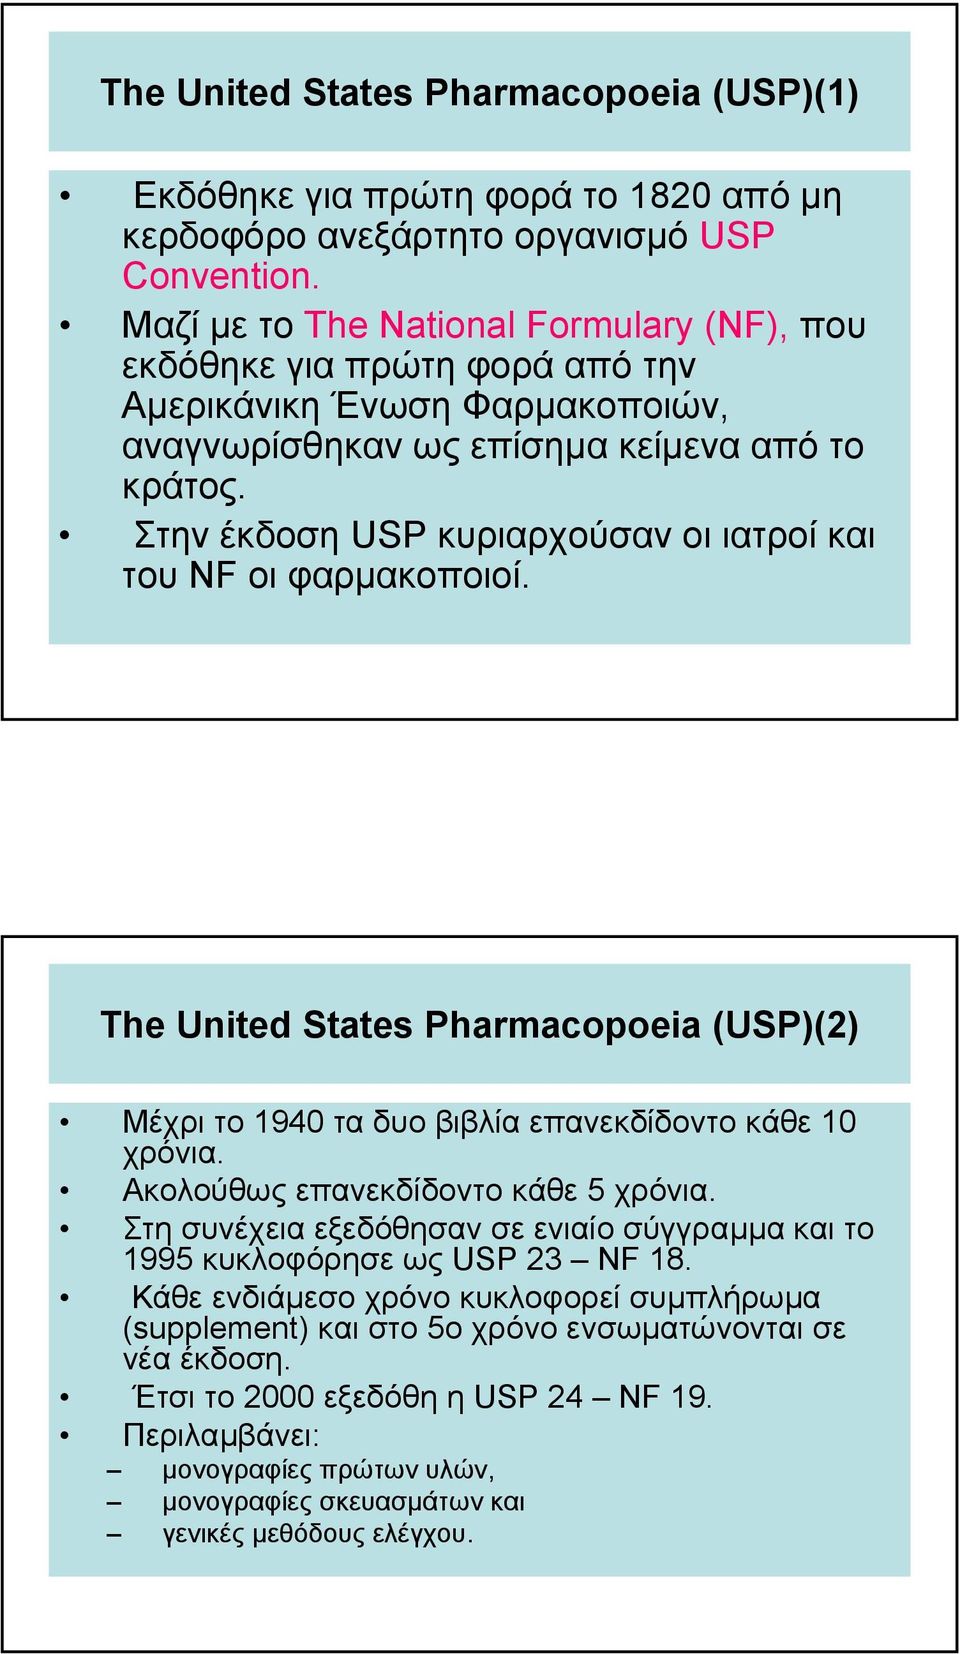 Στην έκδοση USP κυριαρχούσαν οι ιατροί και του NF οι φαρµακοποιοί. The United States Pharmacopoeia (USP)(2) Μέχρι το 1940 τα δυο βιβλία επανεκδίδοντο κάθε 10 χρόνια.